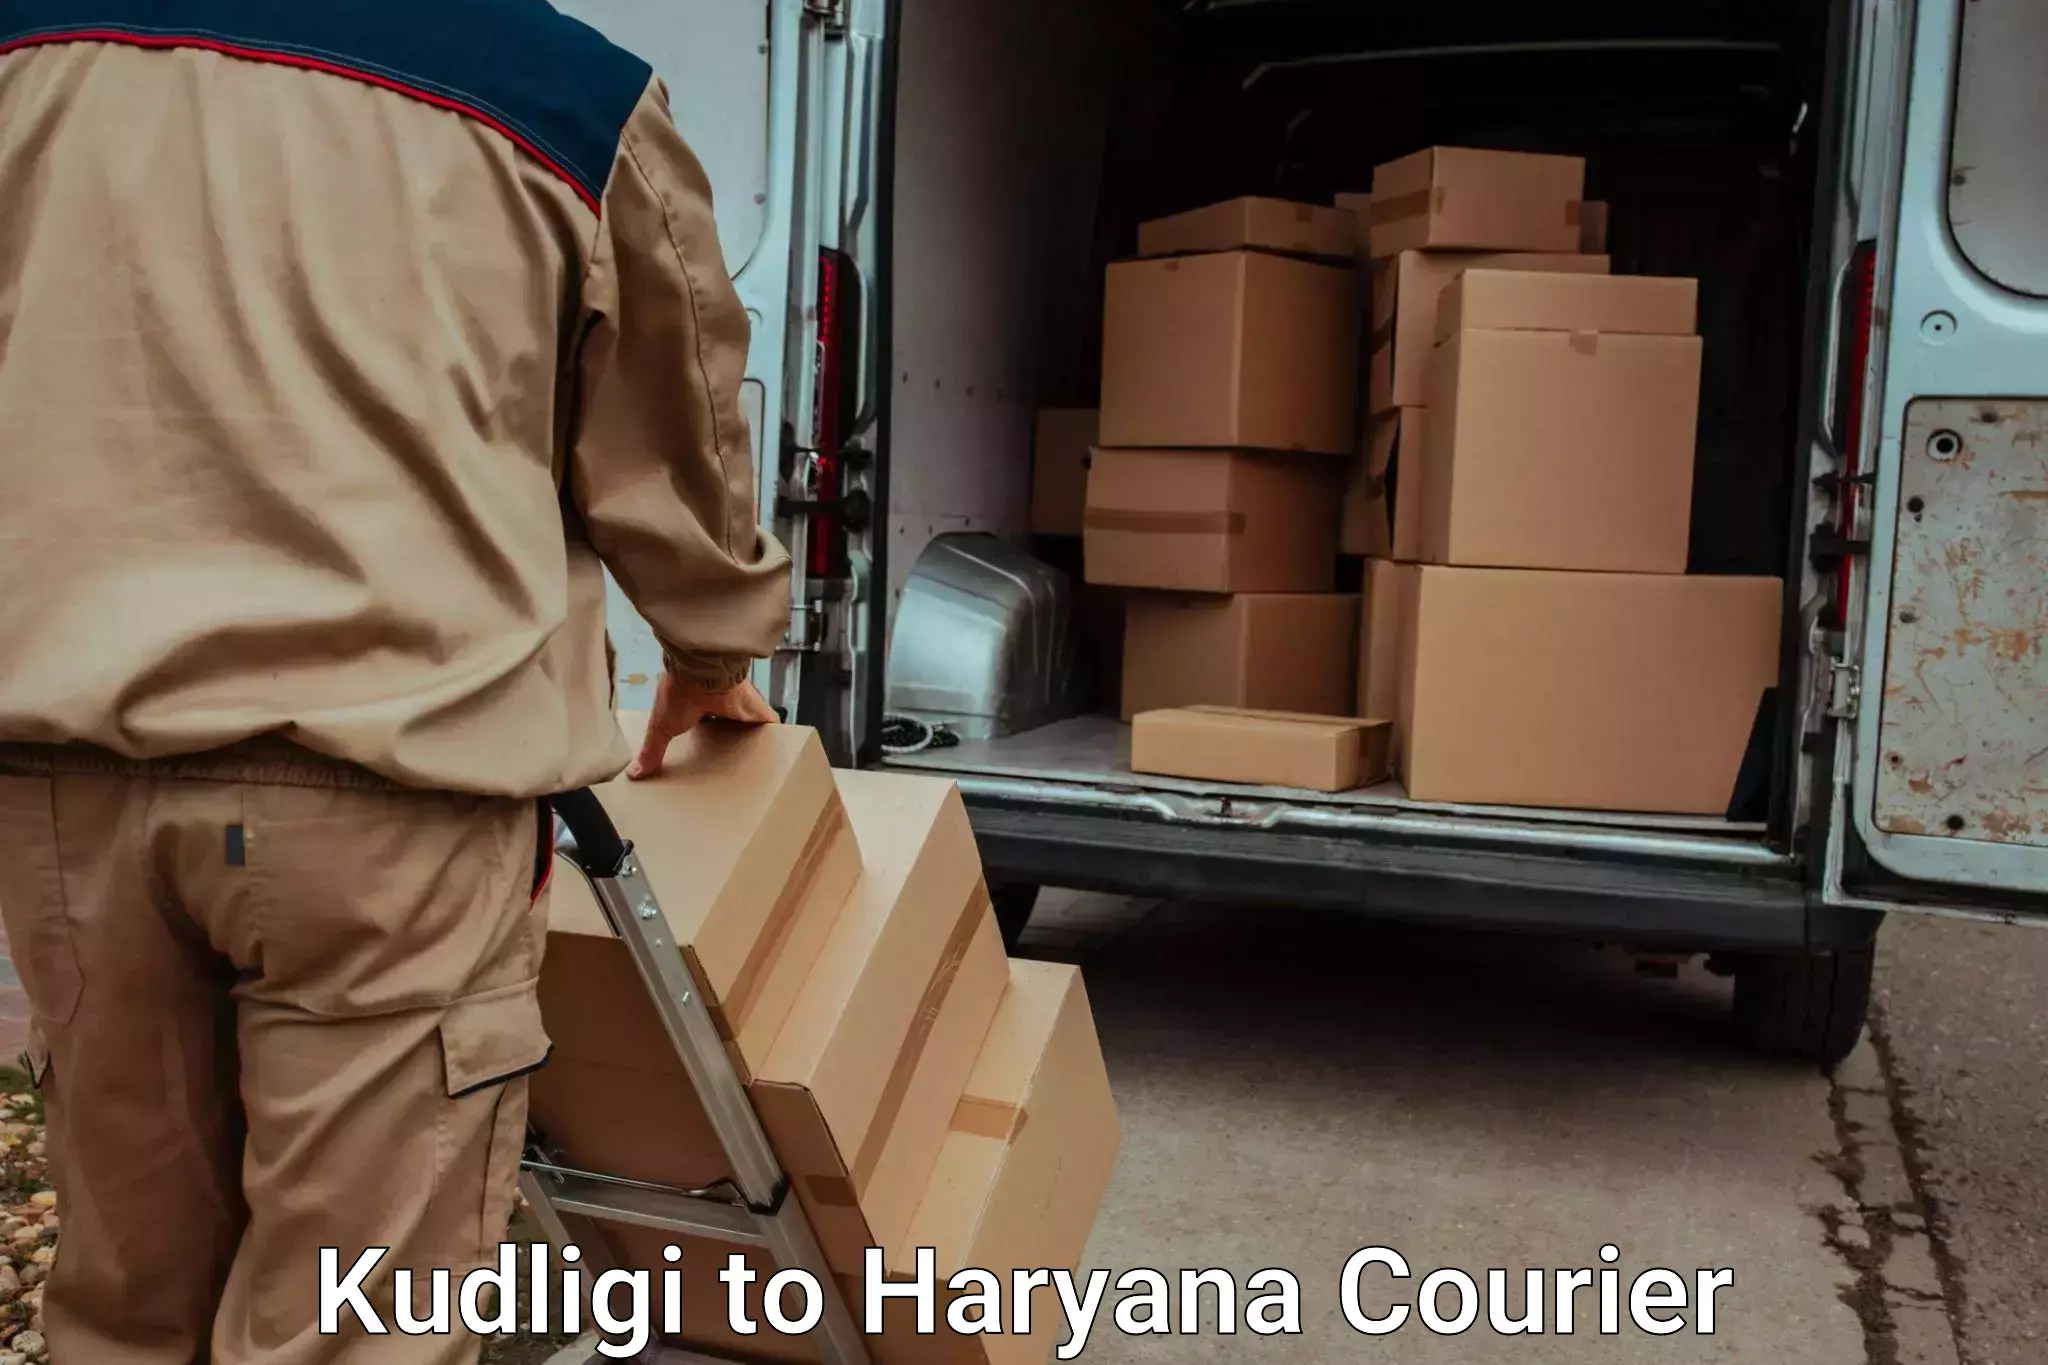 Luggage transport guidelines Kudligi to Sohna